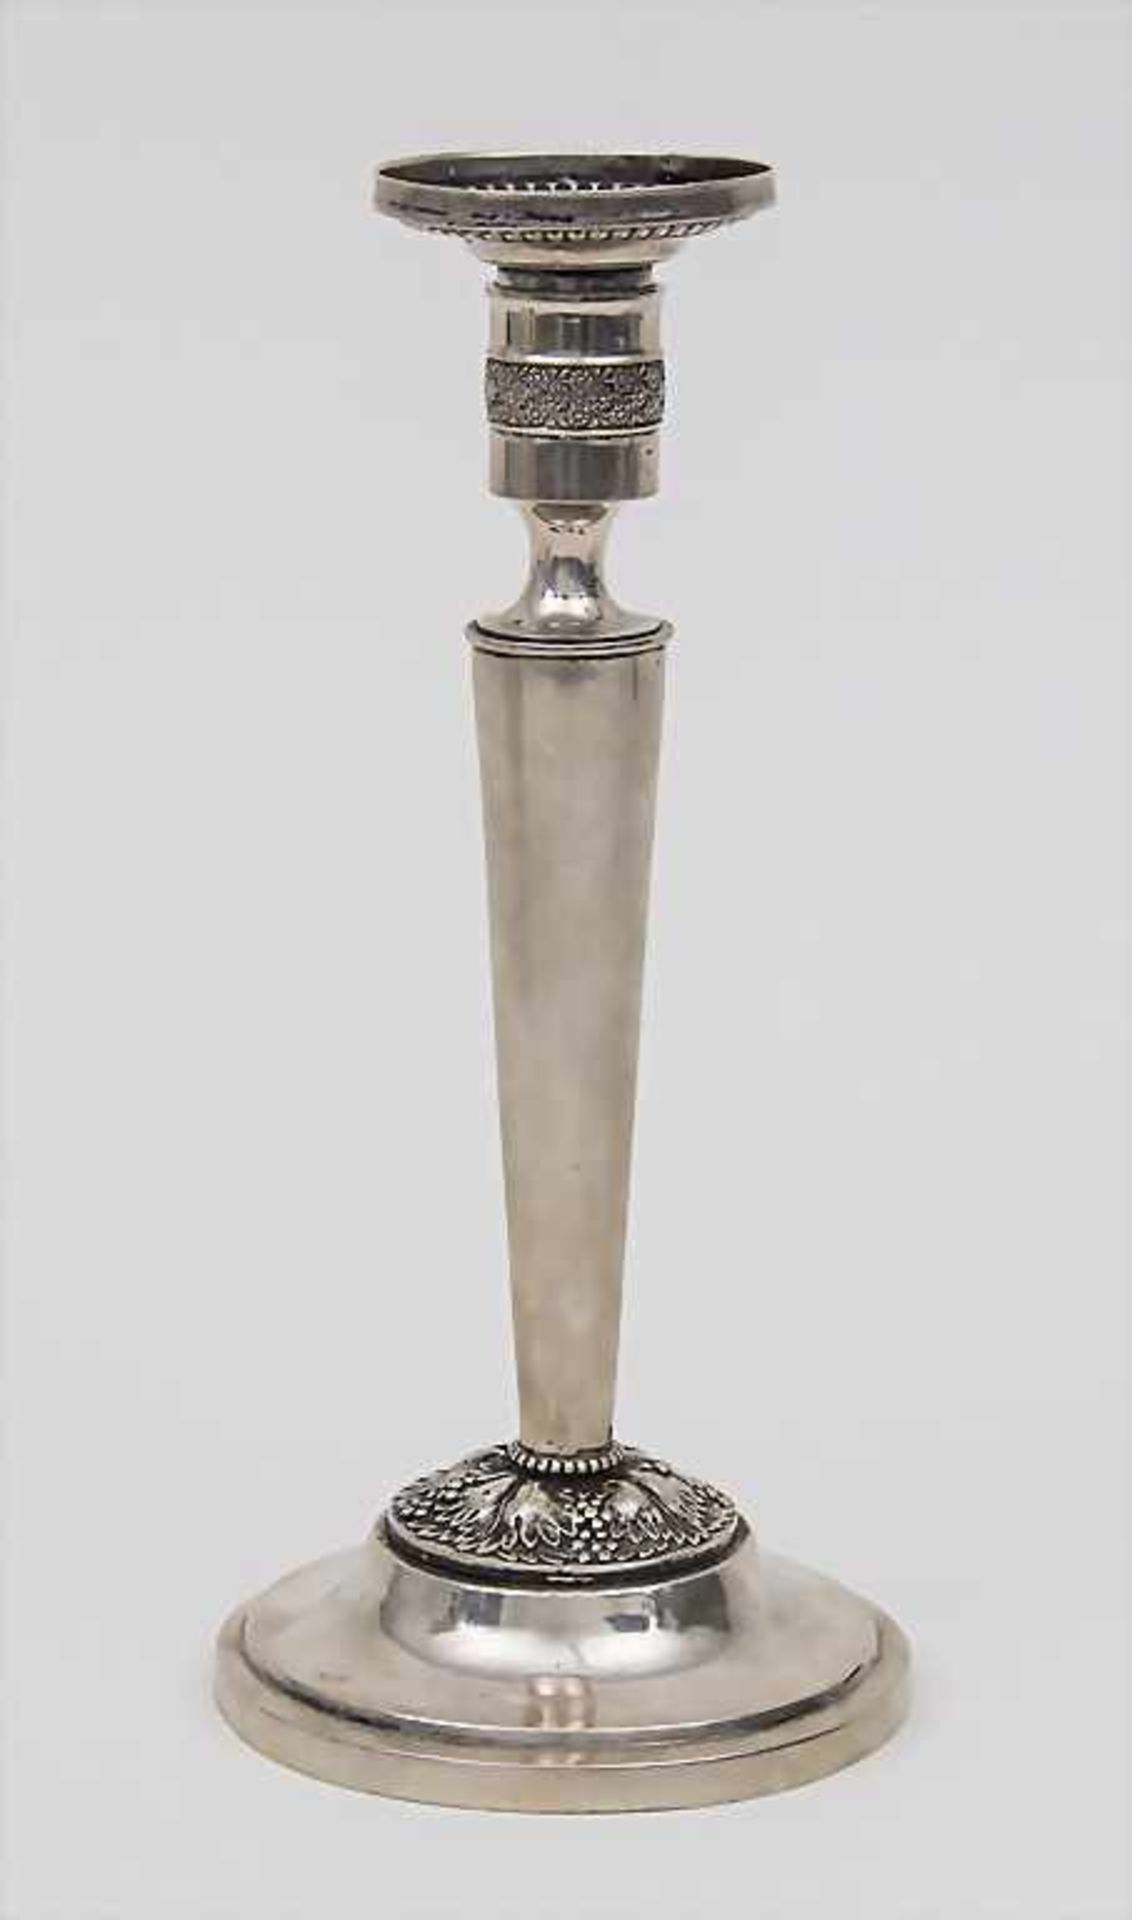 Empire Leuchter / Candle Stick, um 1820Material: Silber 12 Lot,Punzierung: 12, Meisterpunze CLH,